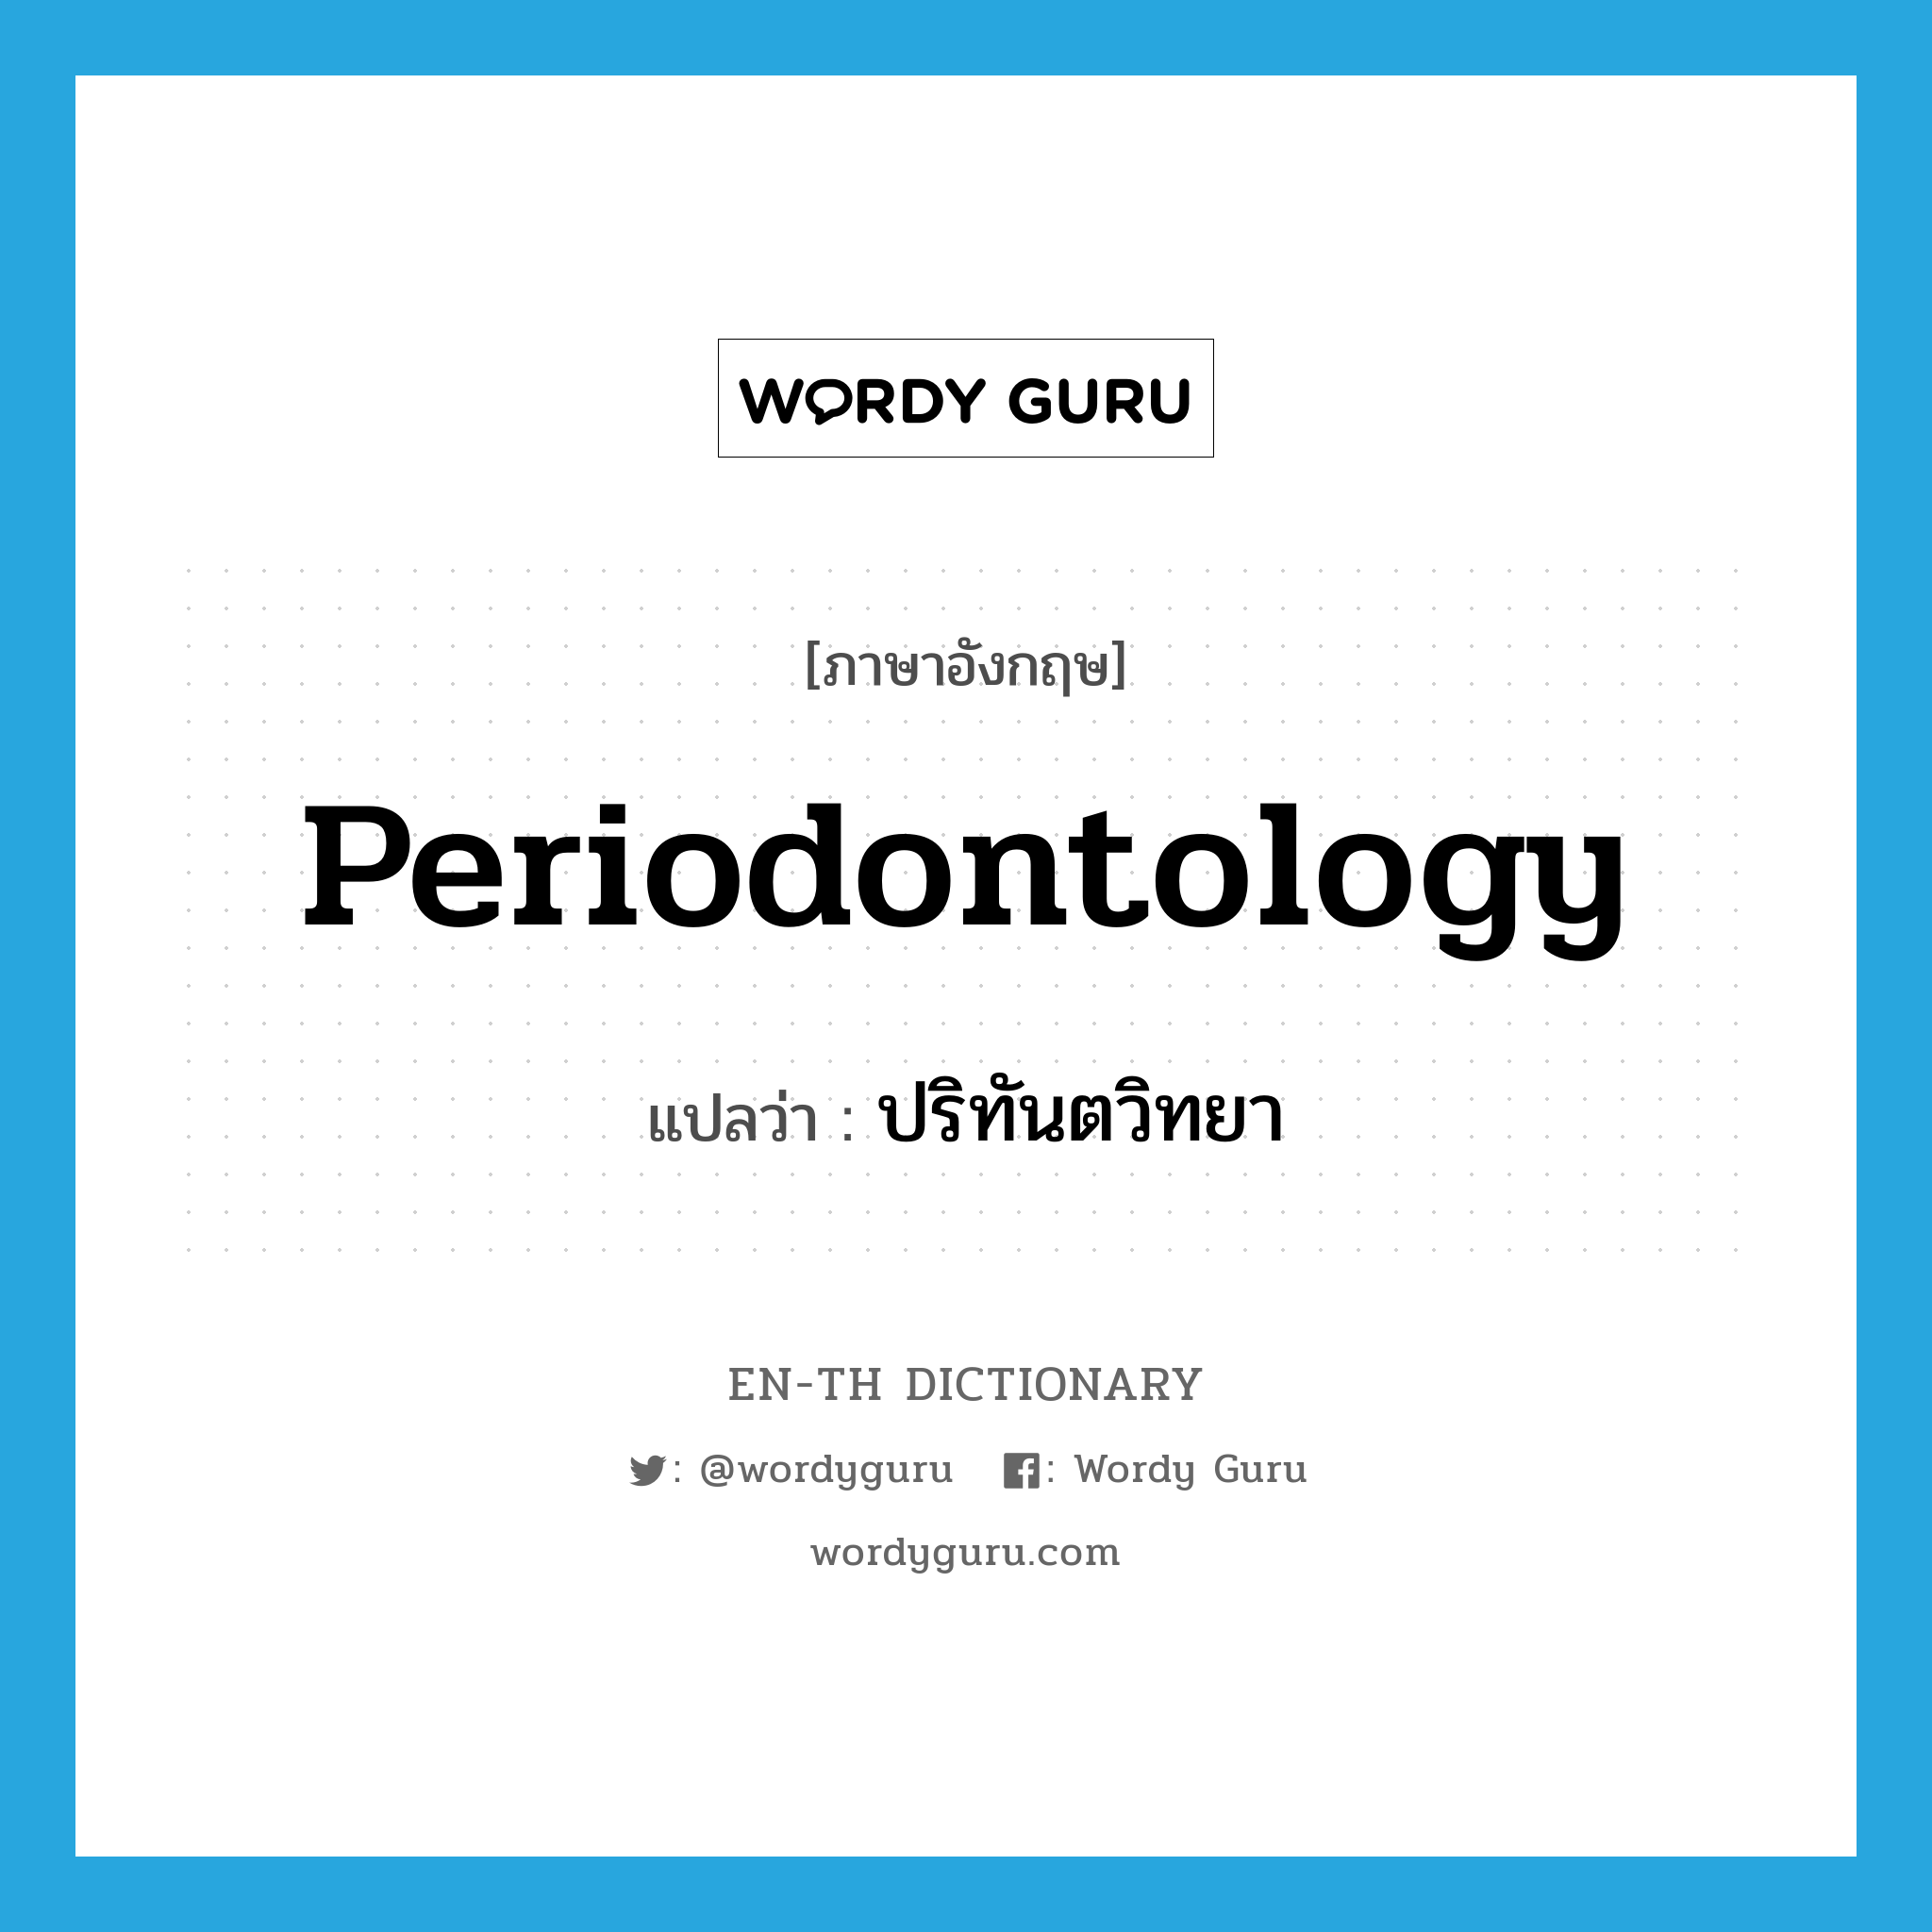 periodontology แปลว่า?, คำศัพท์ภาษาอังกฤษ periodontology แปลว่า ปริทันตวิทยา ประเภท N หมวด N